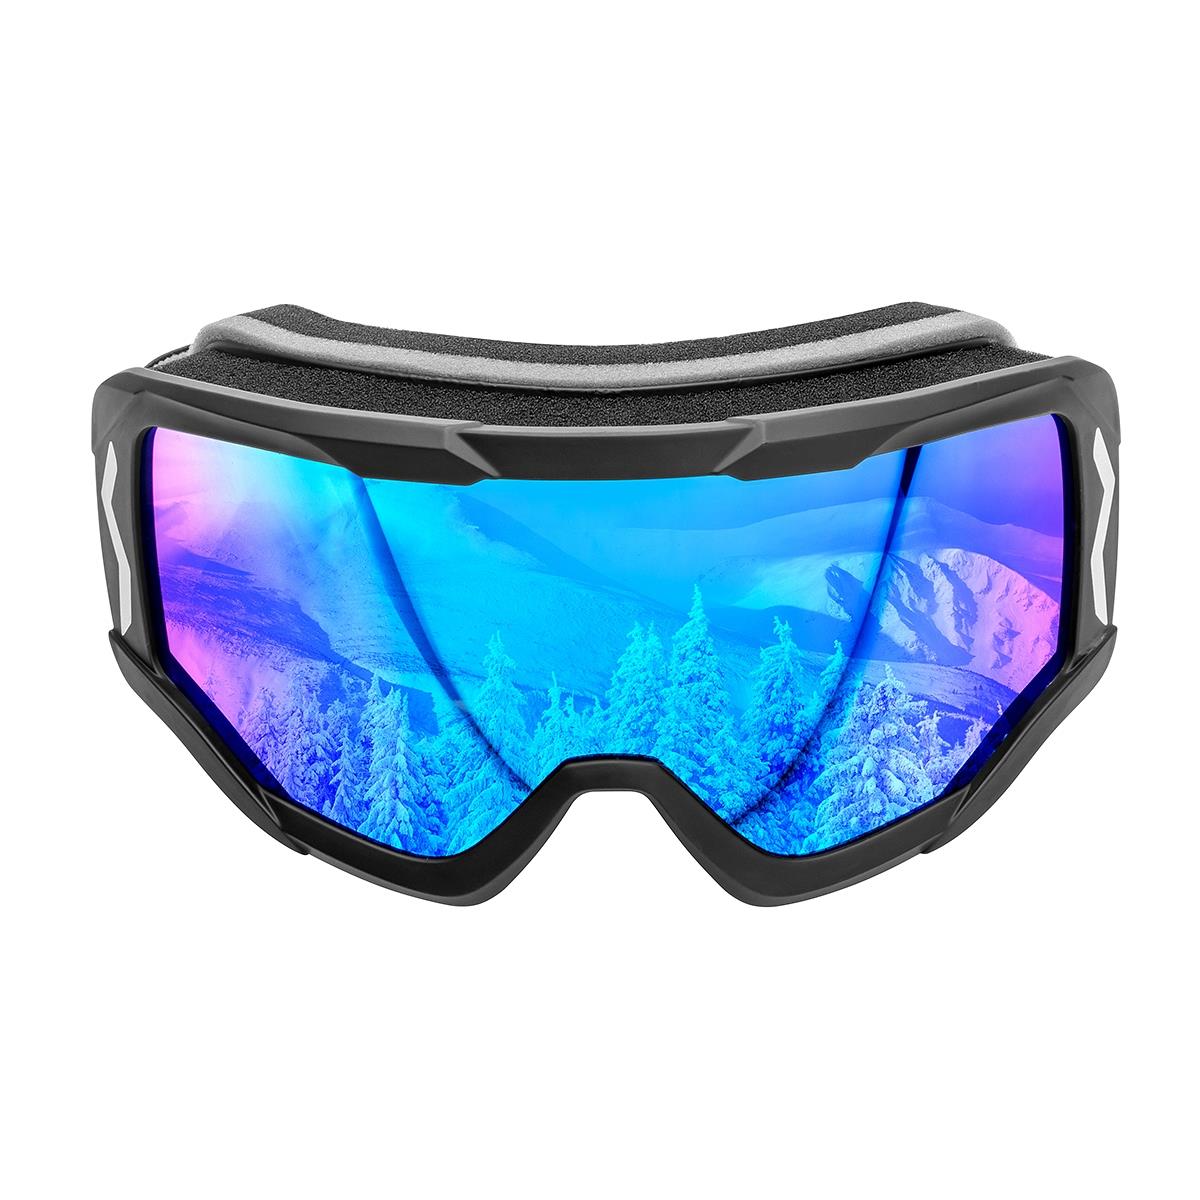 Очки горнолыжные HS-HX-014 Helios очки полумаска для плавания с берушами детские uv защита